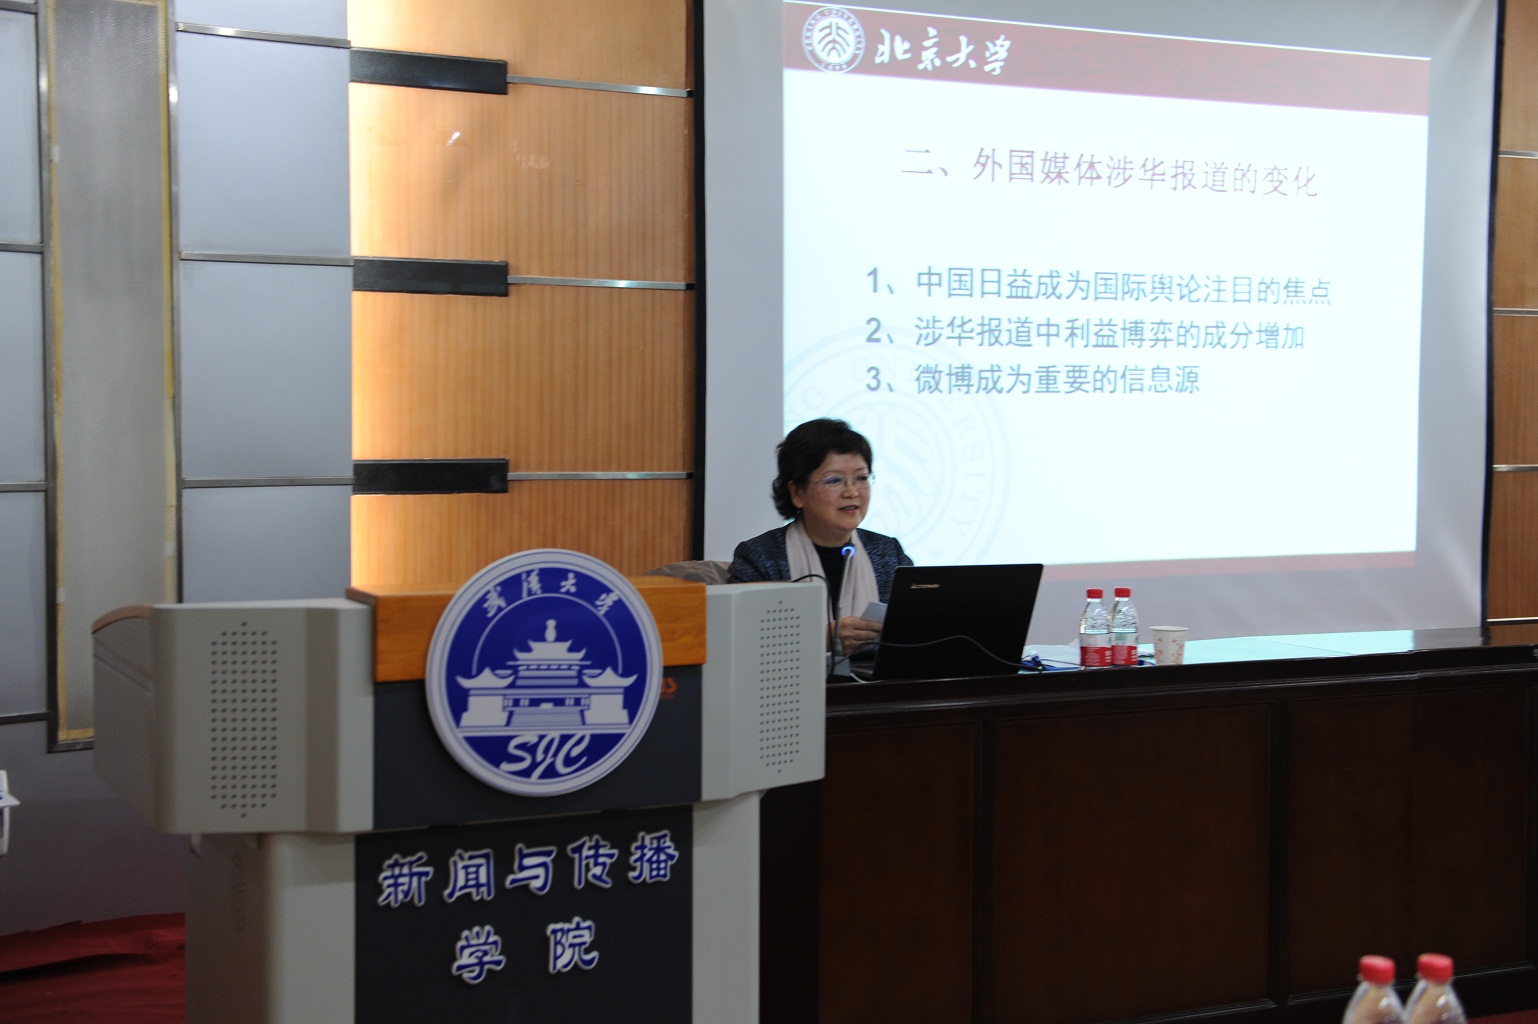 程曼丽教授解析中国对外传播的格局与策略